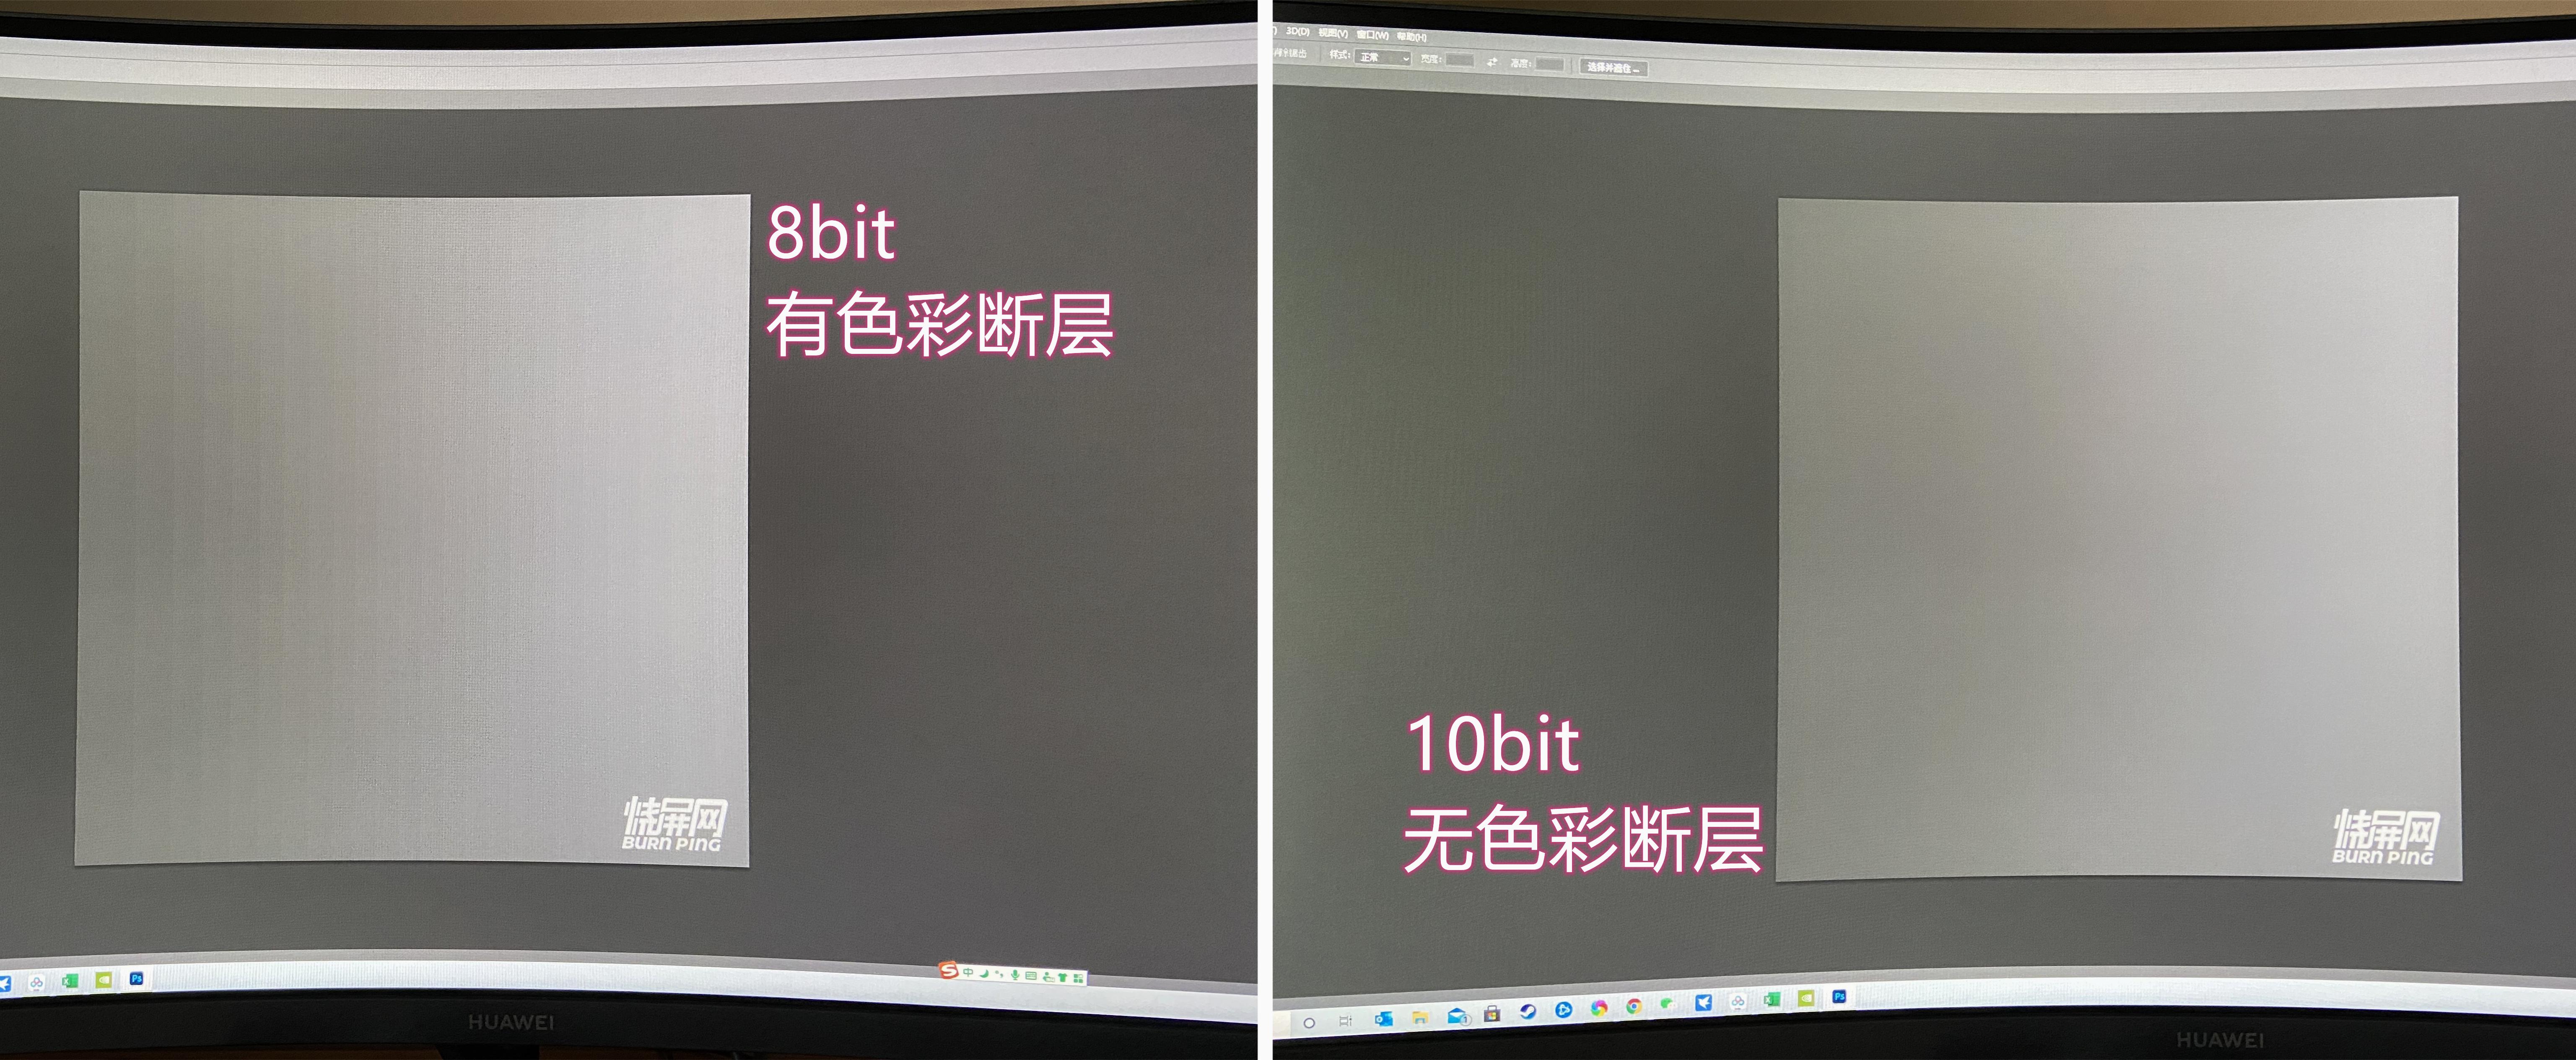 很多不支持抖10bit的显示器,比如sanc g7,开启hdr后都能支持10bit